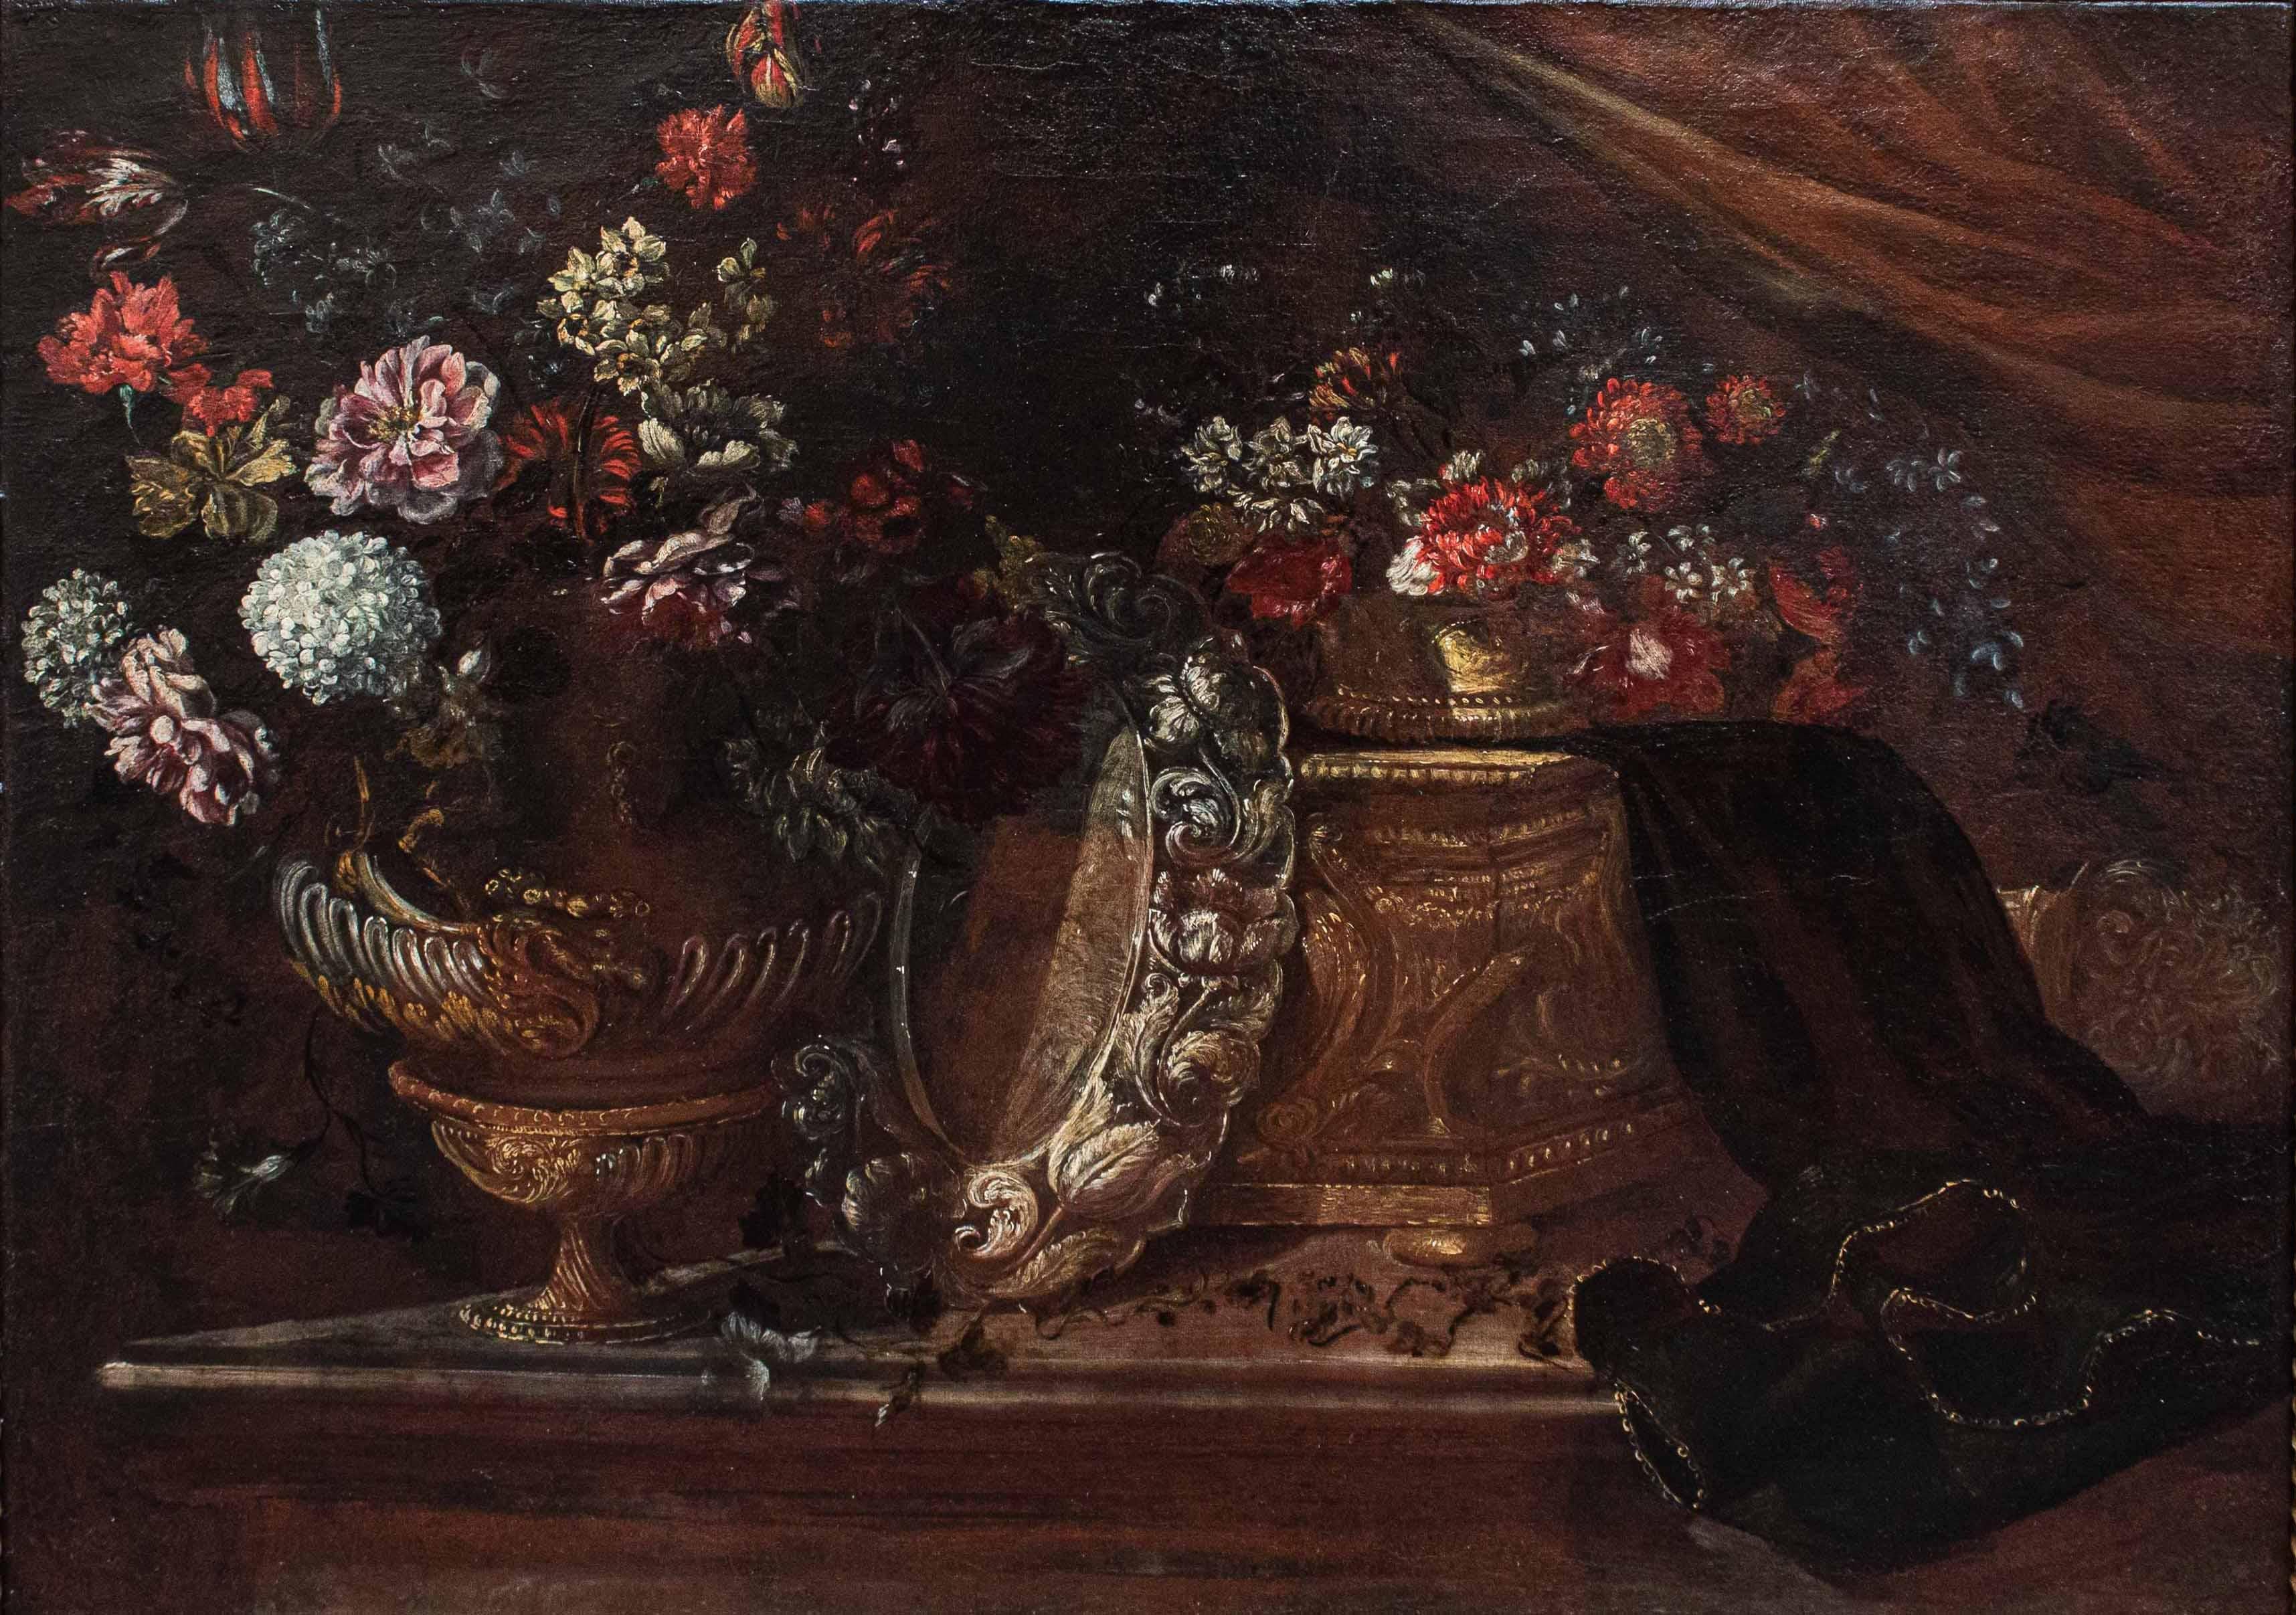 Römische Schule, 17. Jahrhundert

Stilleben

Öl auf Leinwand, 79 x 107 cm 

Gerahmt, 93 x 121 cm

Das untersuchte Werk, das ein majestätisches Blumenstillleben darstellt, wird der römischen Schule des 17. Jahrhunderts zugeschrieben, die sich aus